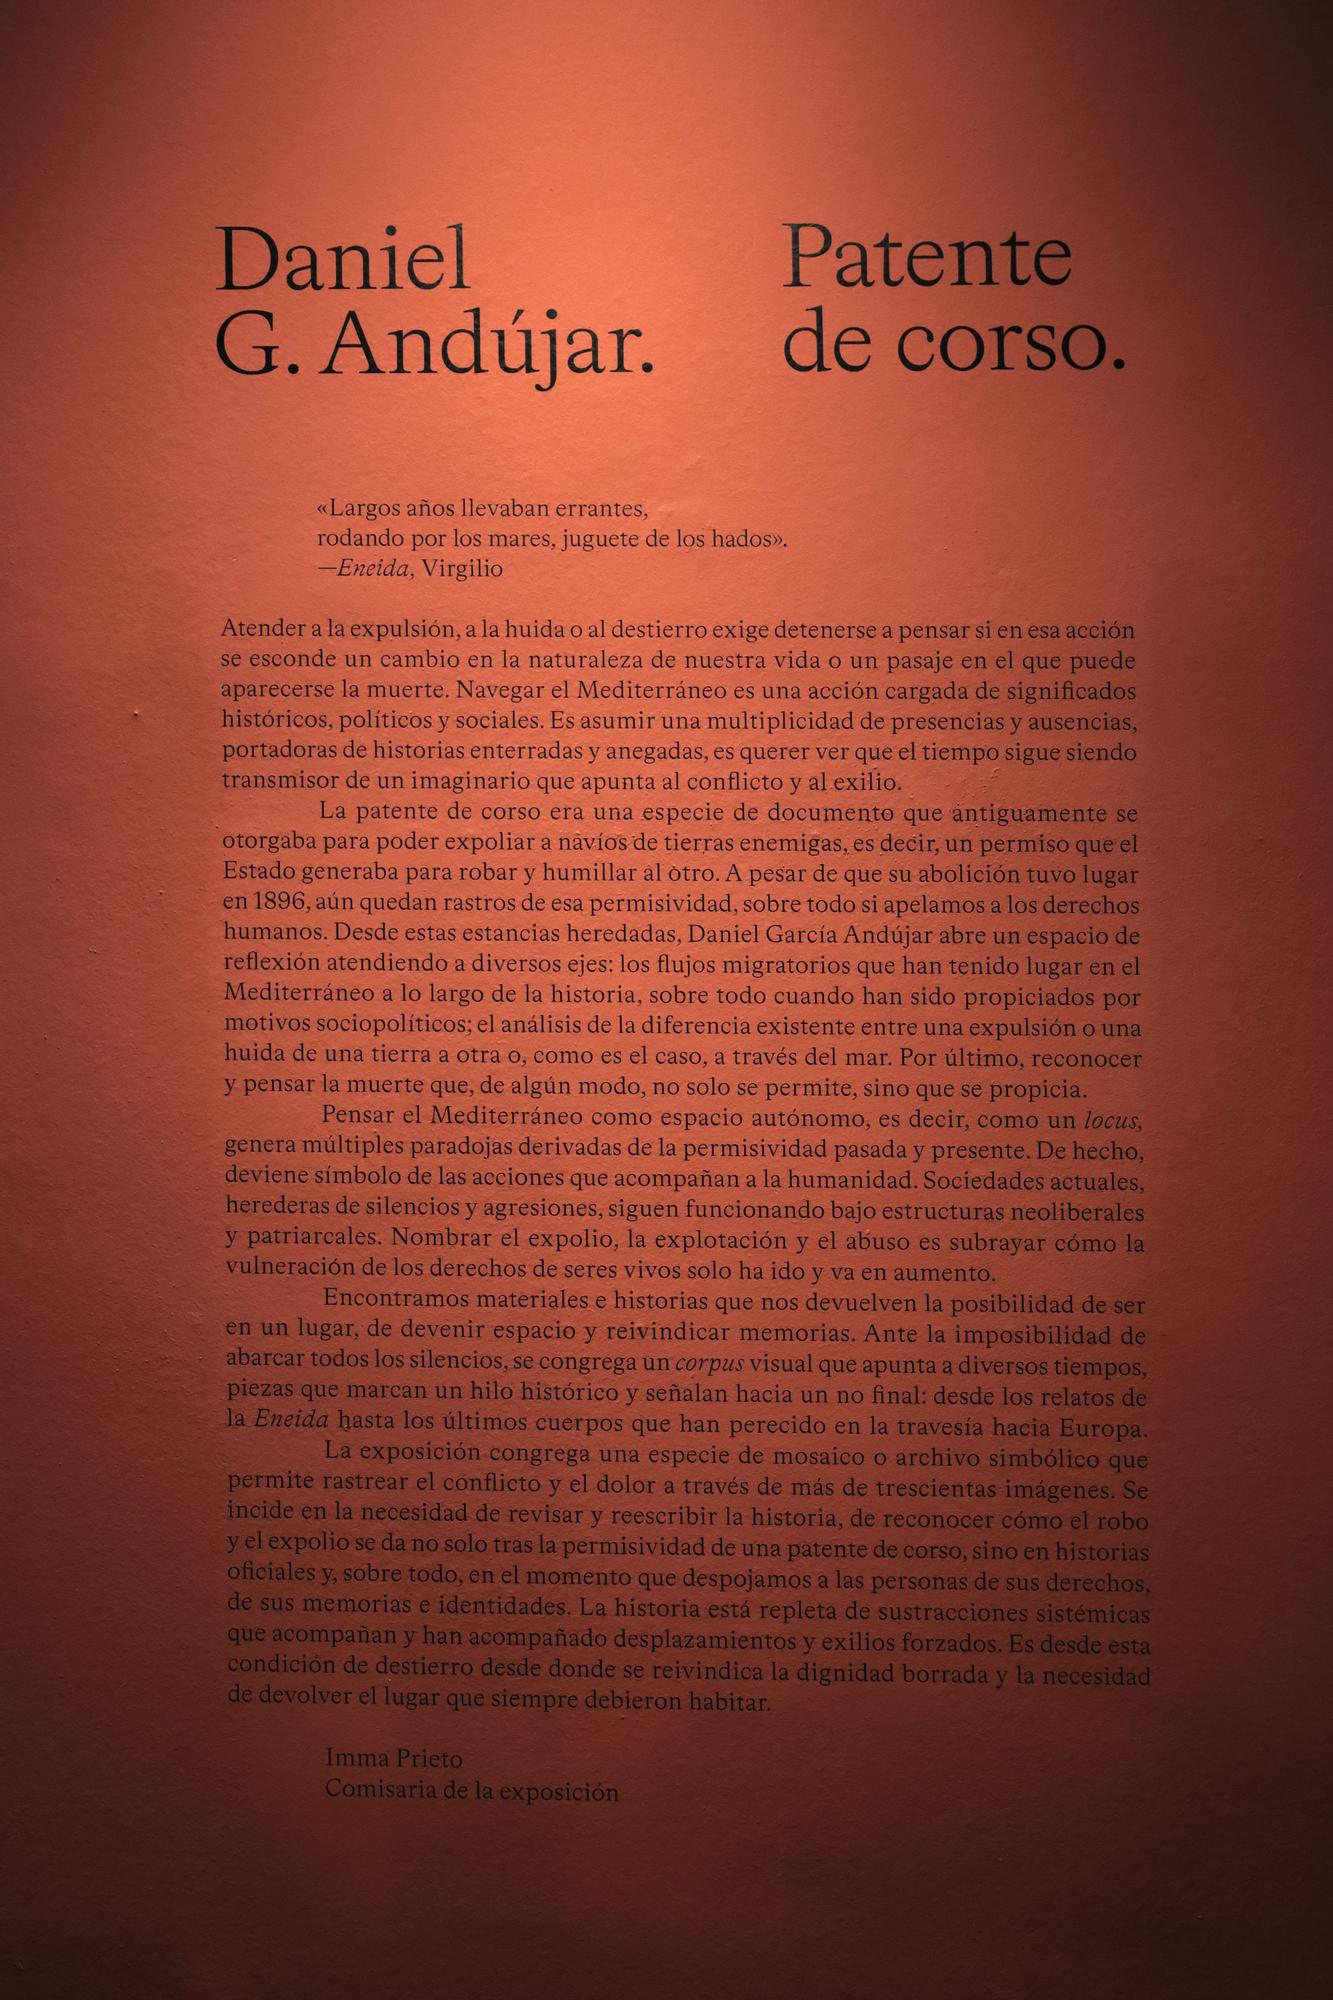 Daniel G. Andújar expone "Patente de corso" en el Museo de Antropología de Madrid